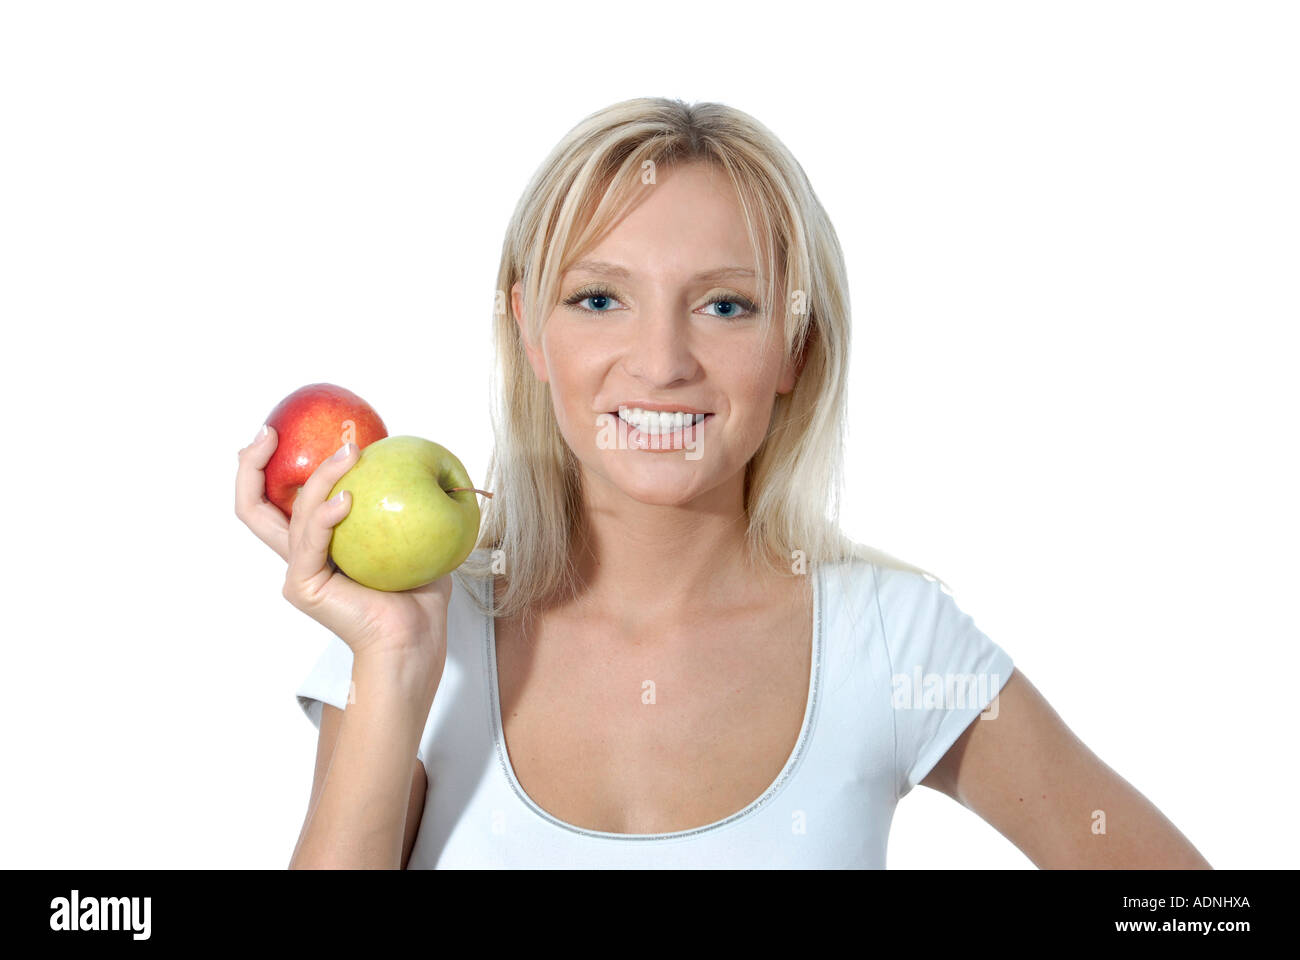 Junge Frau blond lacht laechelt freundlich positiv Aepfel Apfel rot gruen Obst gesund Vitamine Stock Photo